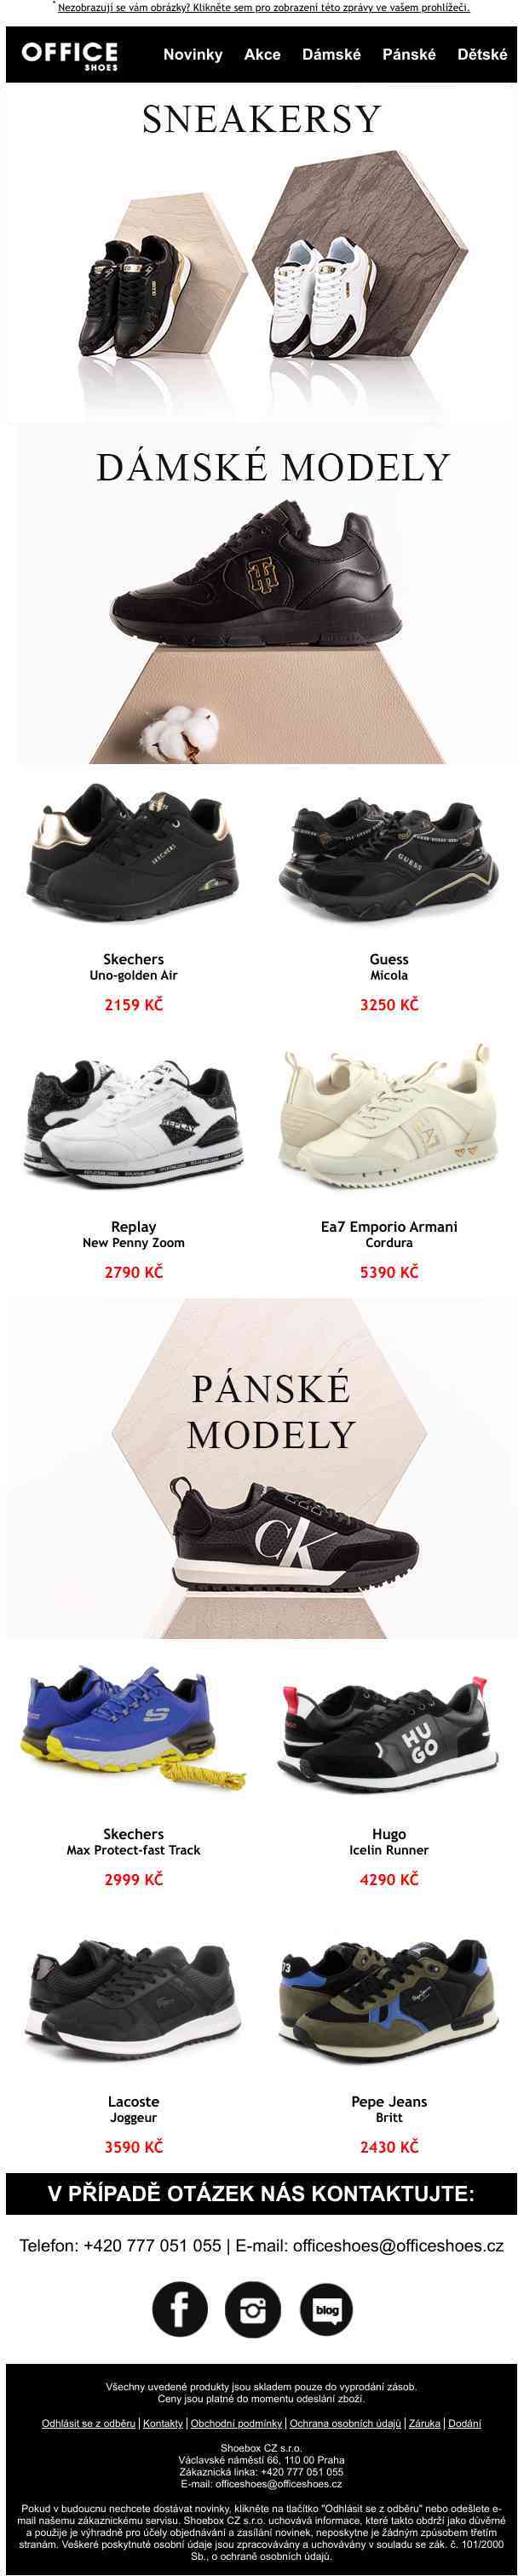 🍁Skvělý výběr podzimních modelů sneakersů najdete v naší Nové kolekci! 🍁